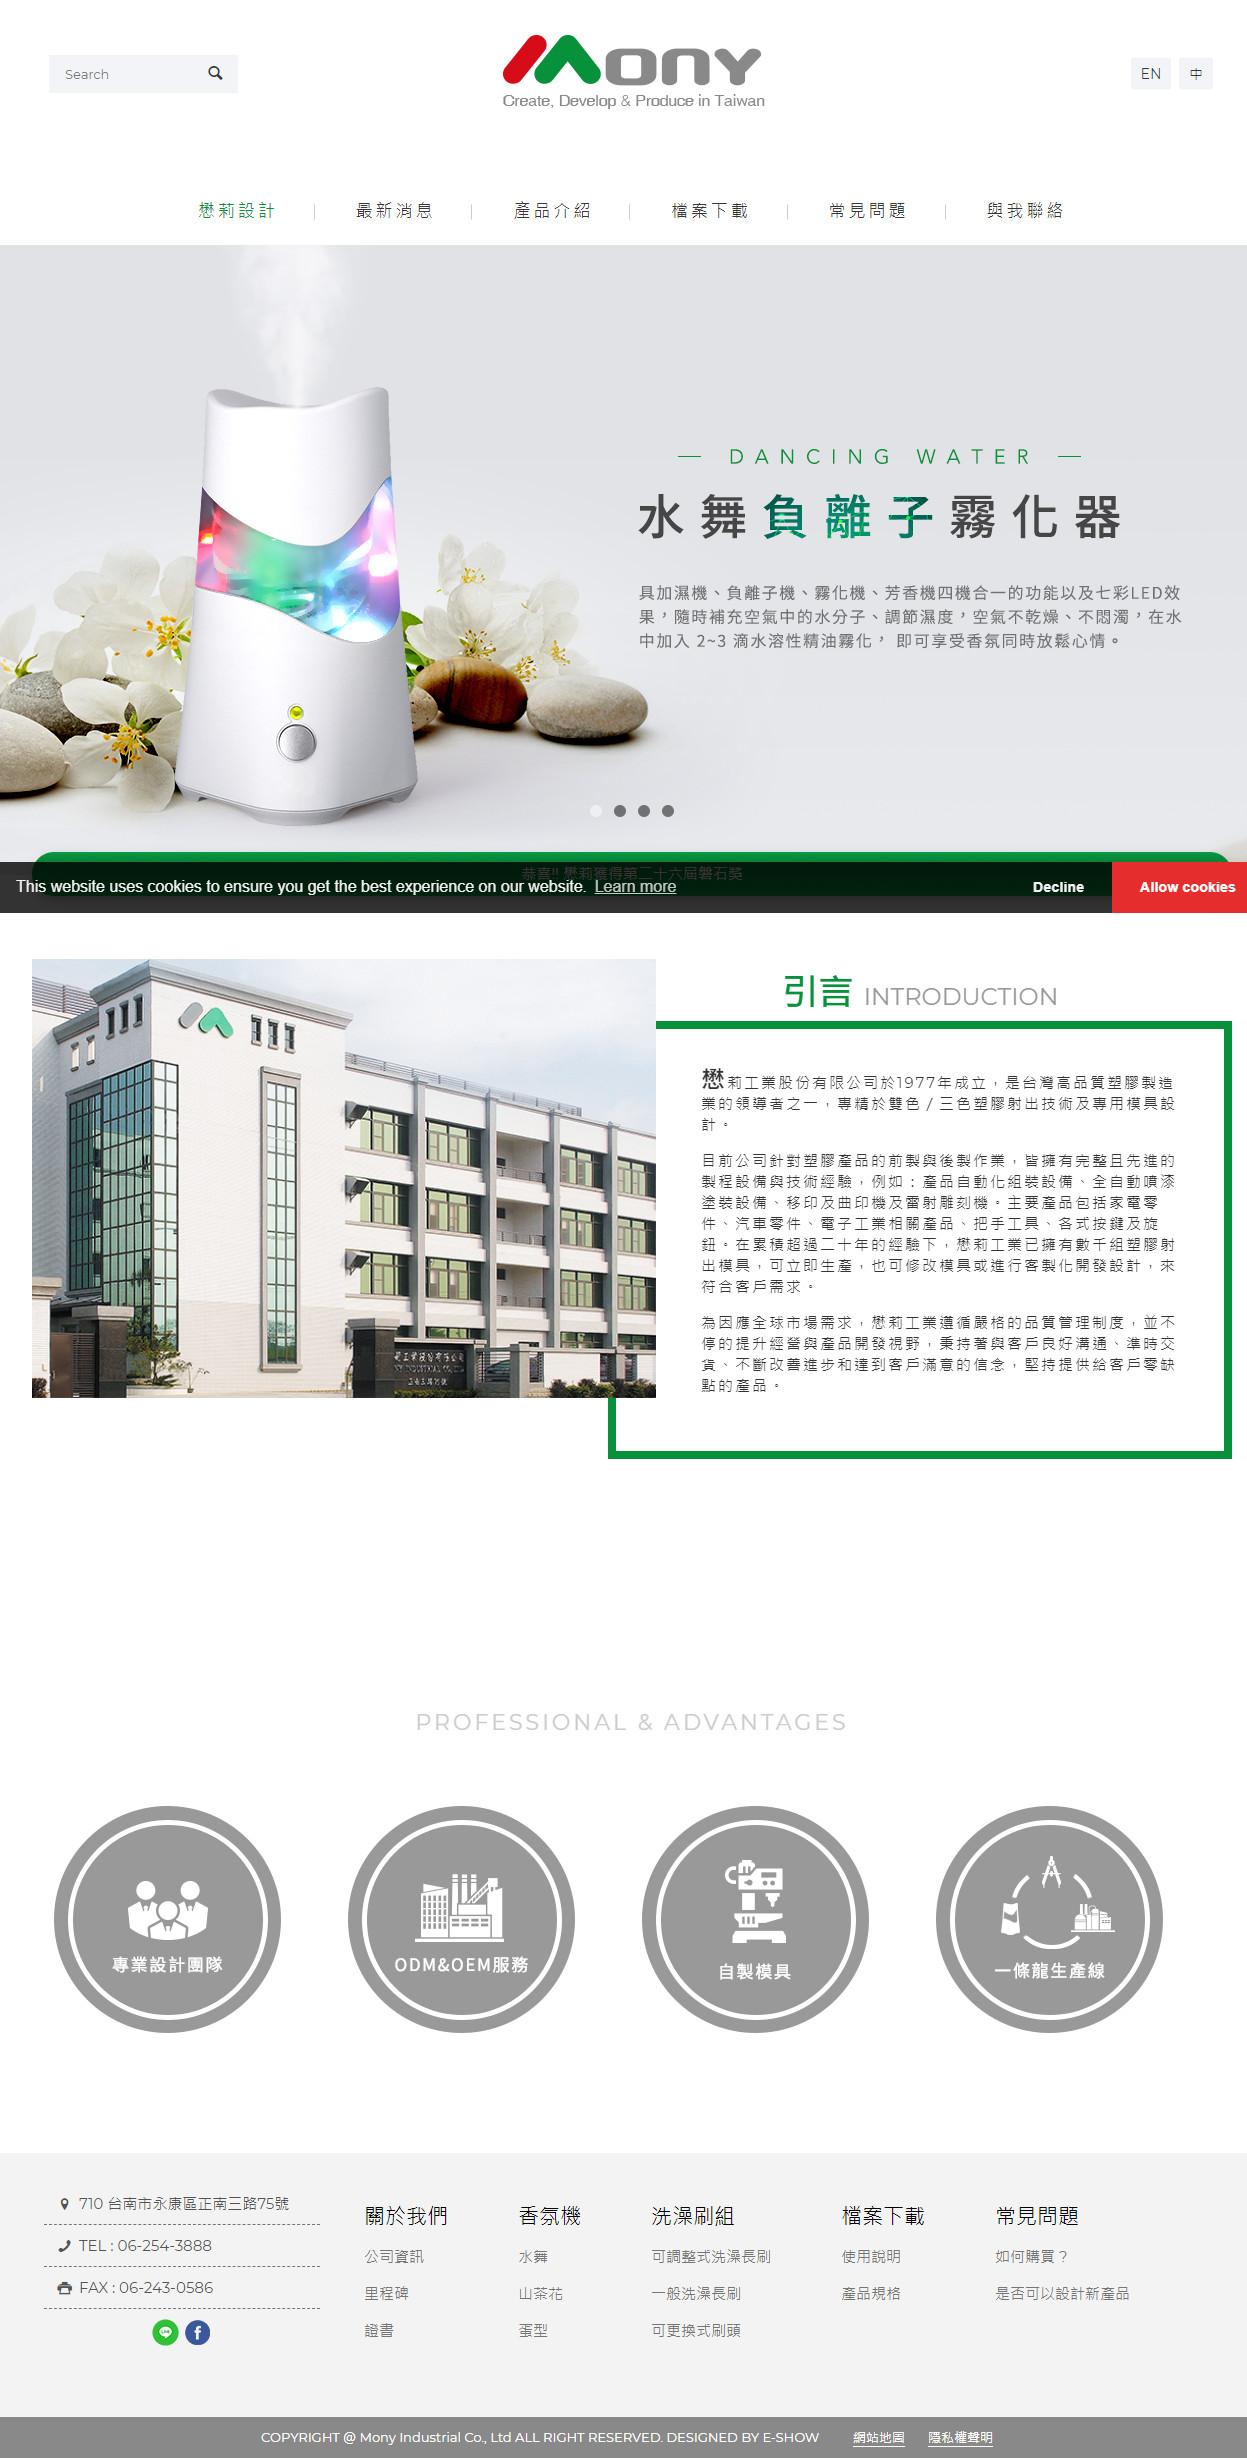 懋莉工業股份有限公司 響應式企業網站設計
網站設計